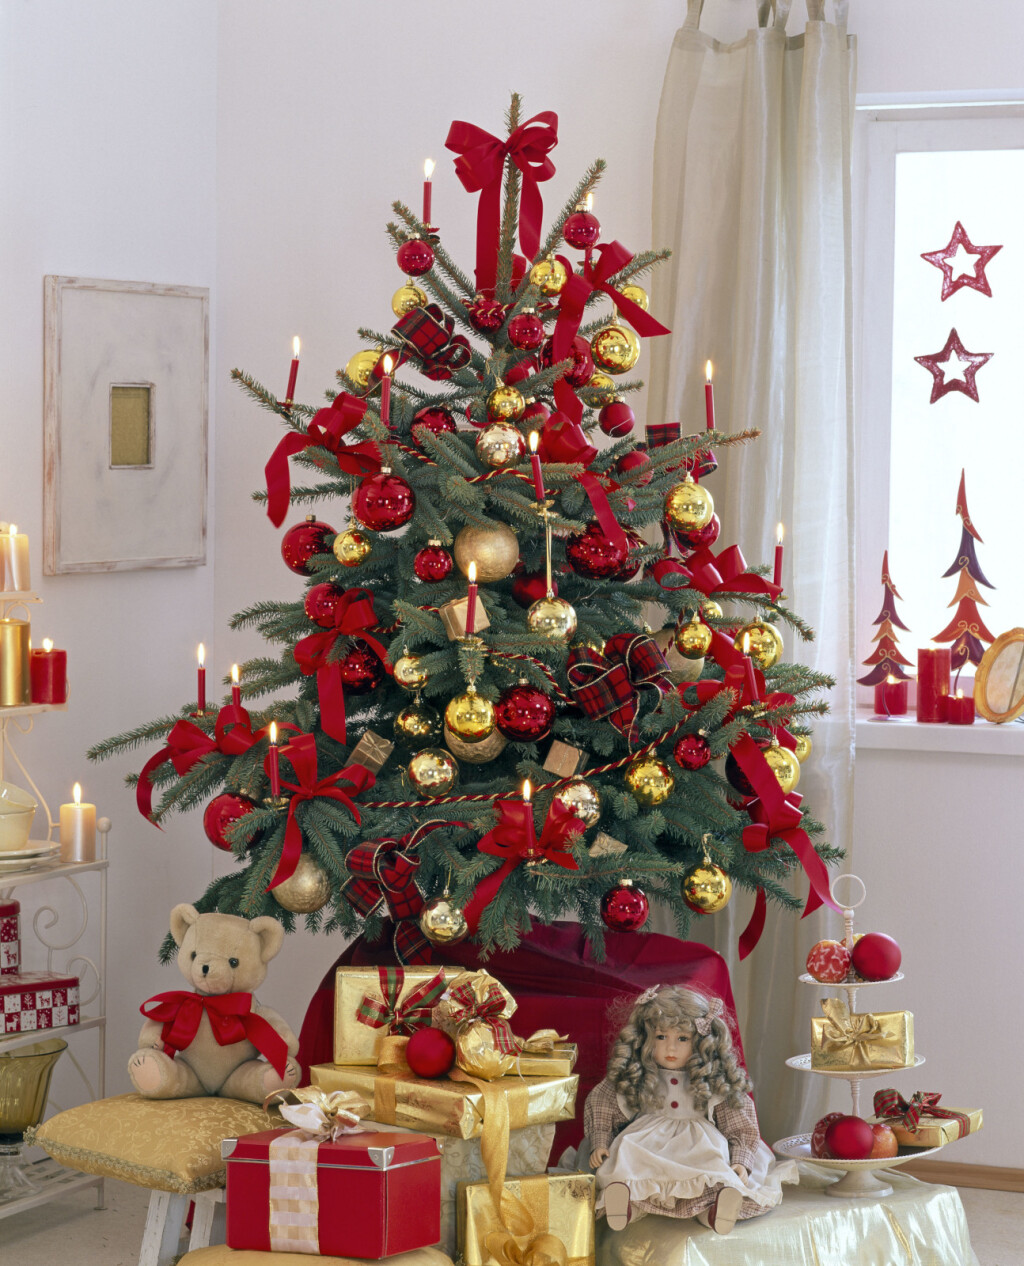 Pet stilova kićenja božićnog drvca - 2